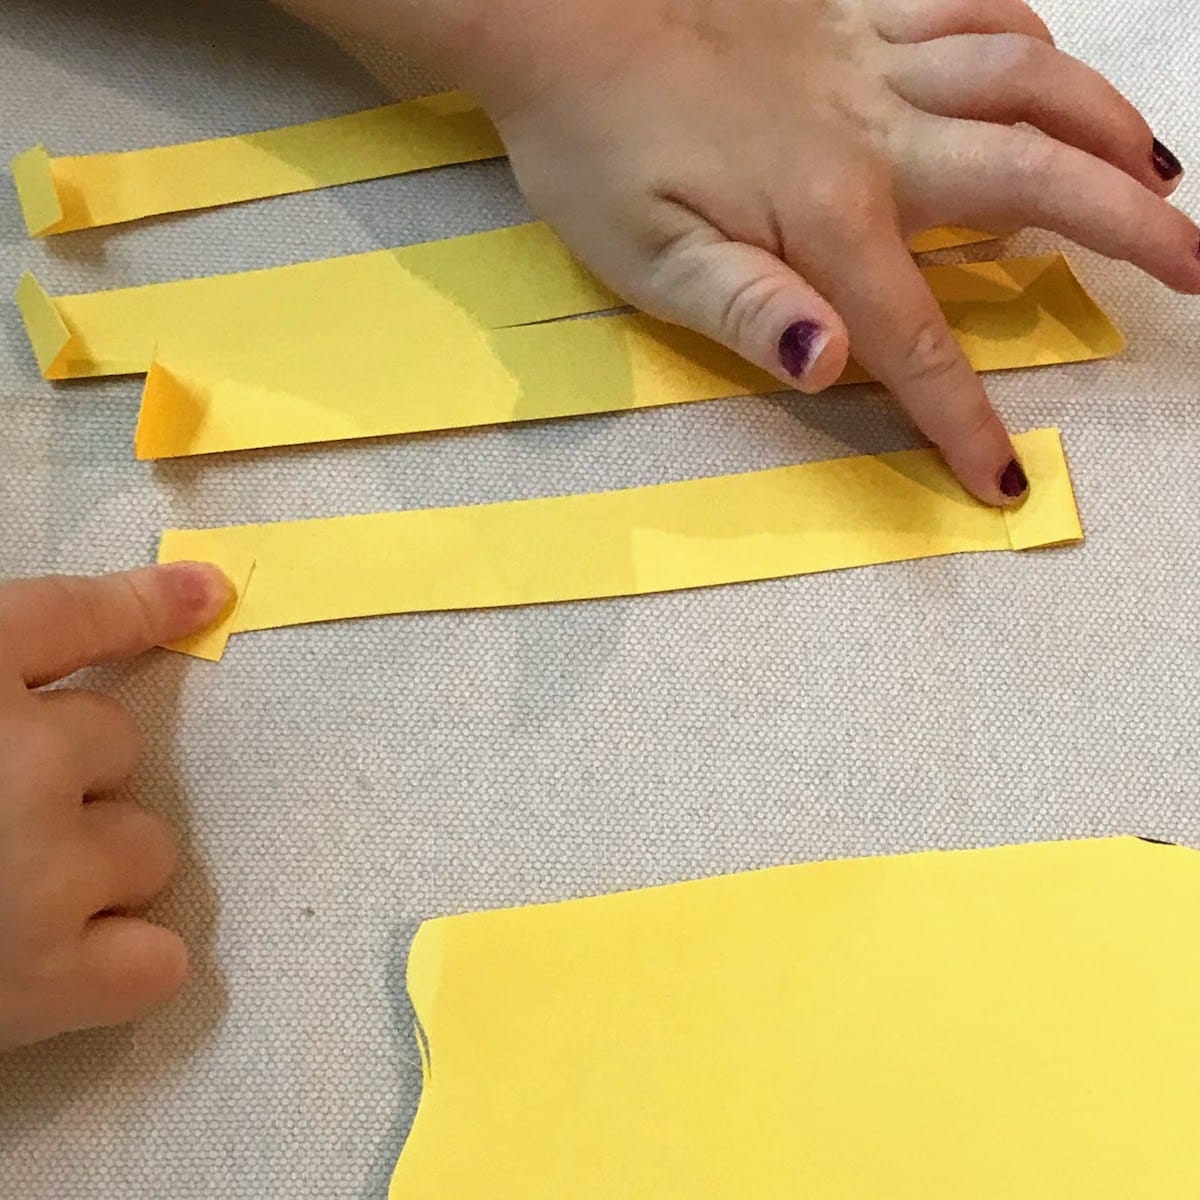 Folding edges of strips